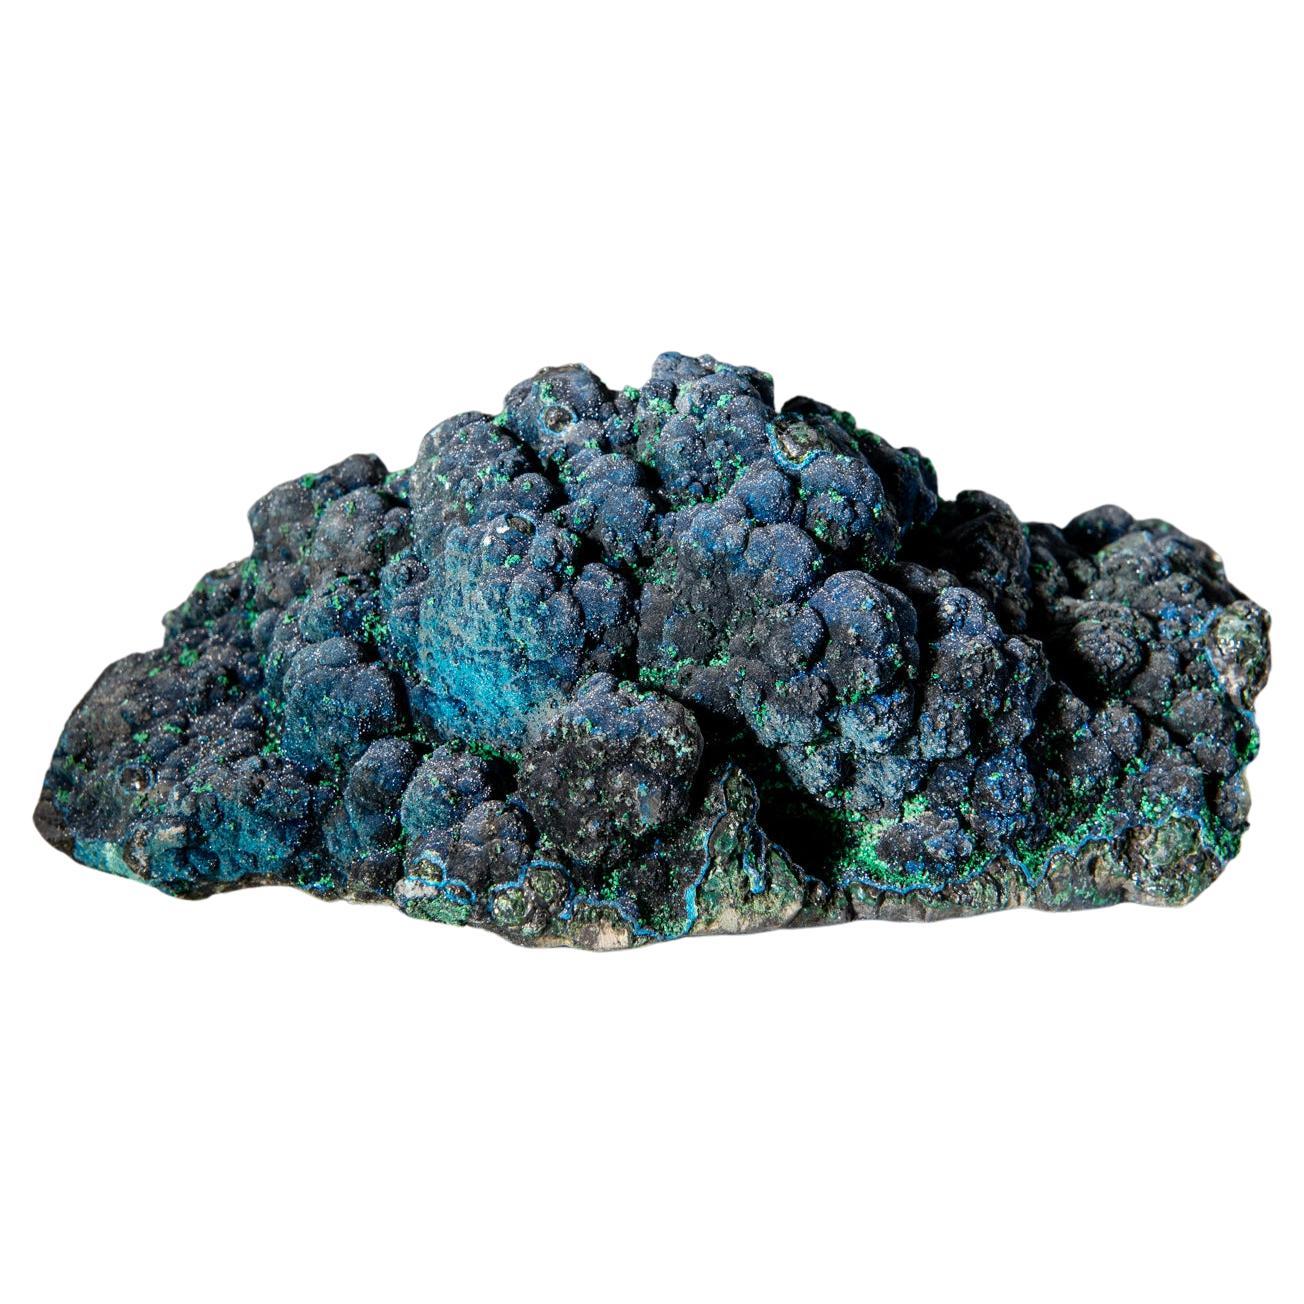 Cornetite From L'Etoile du Congo Mine, Democratic Republic of the Congo (Zaire)